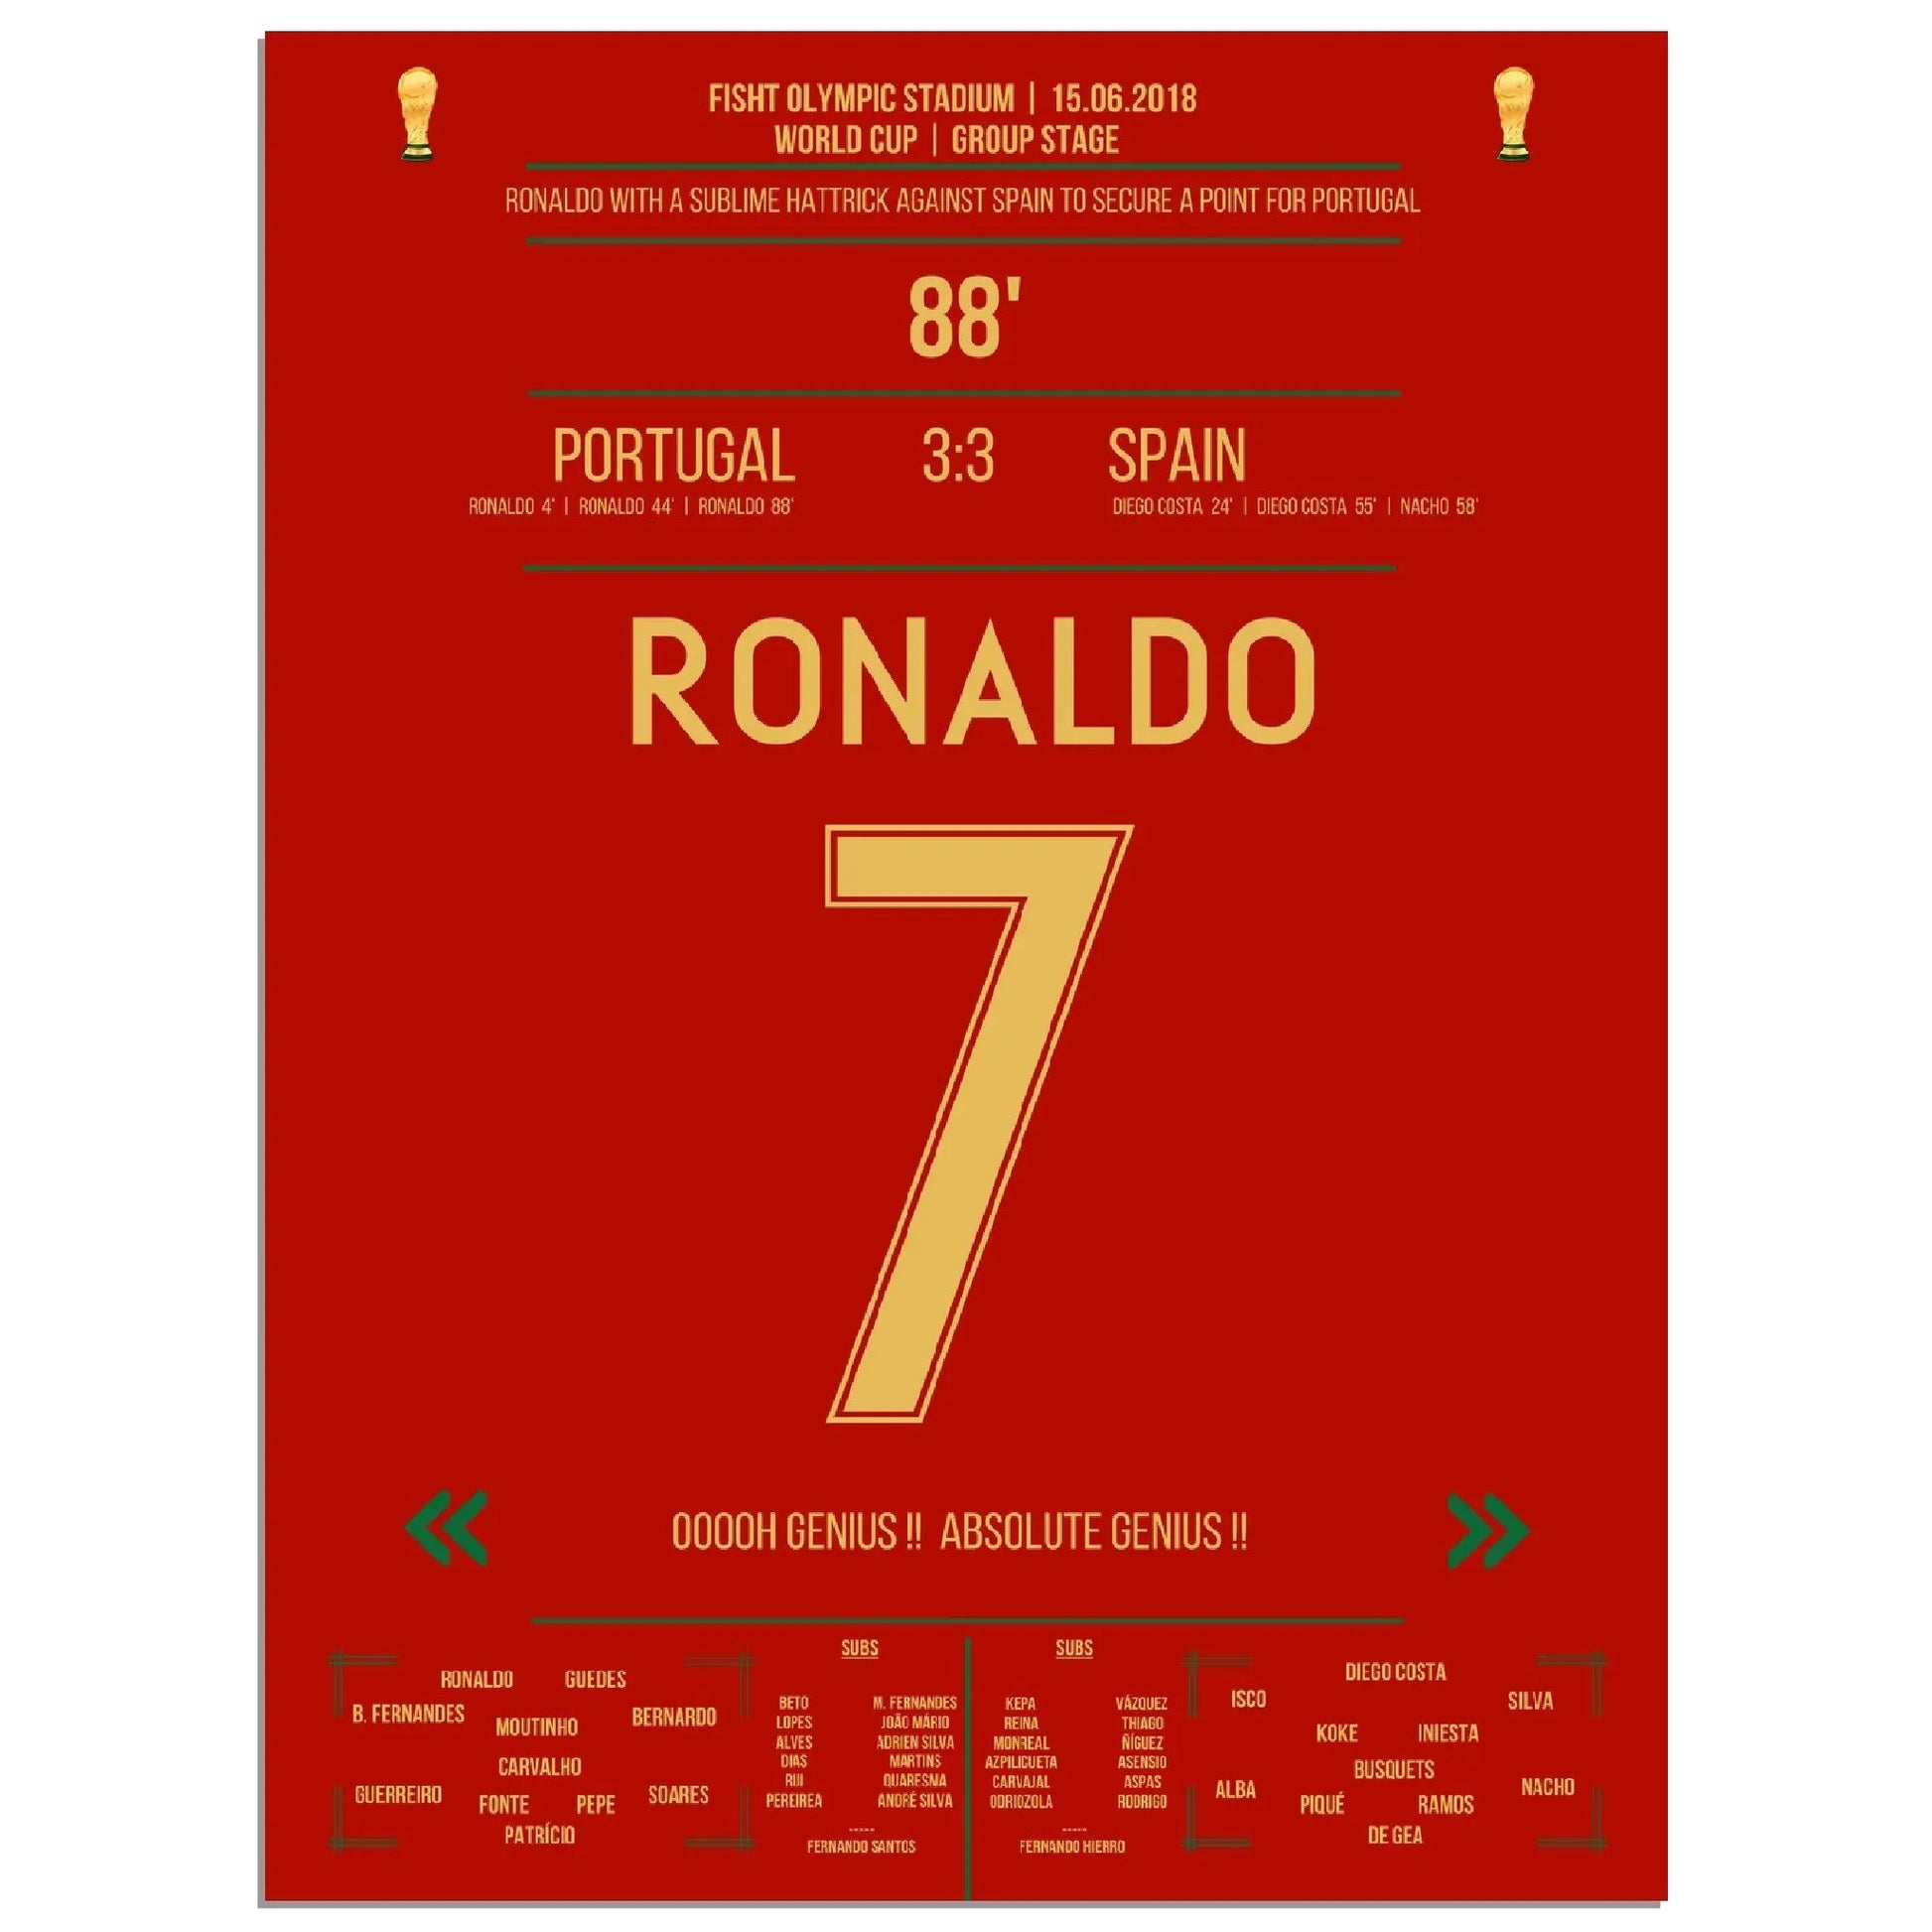 Ronaldos Hattrick sichert Portugal einen Punkt gegen Spanien bei der Weltmeisterschaft 2018 